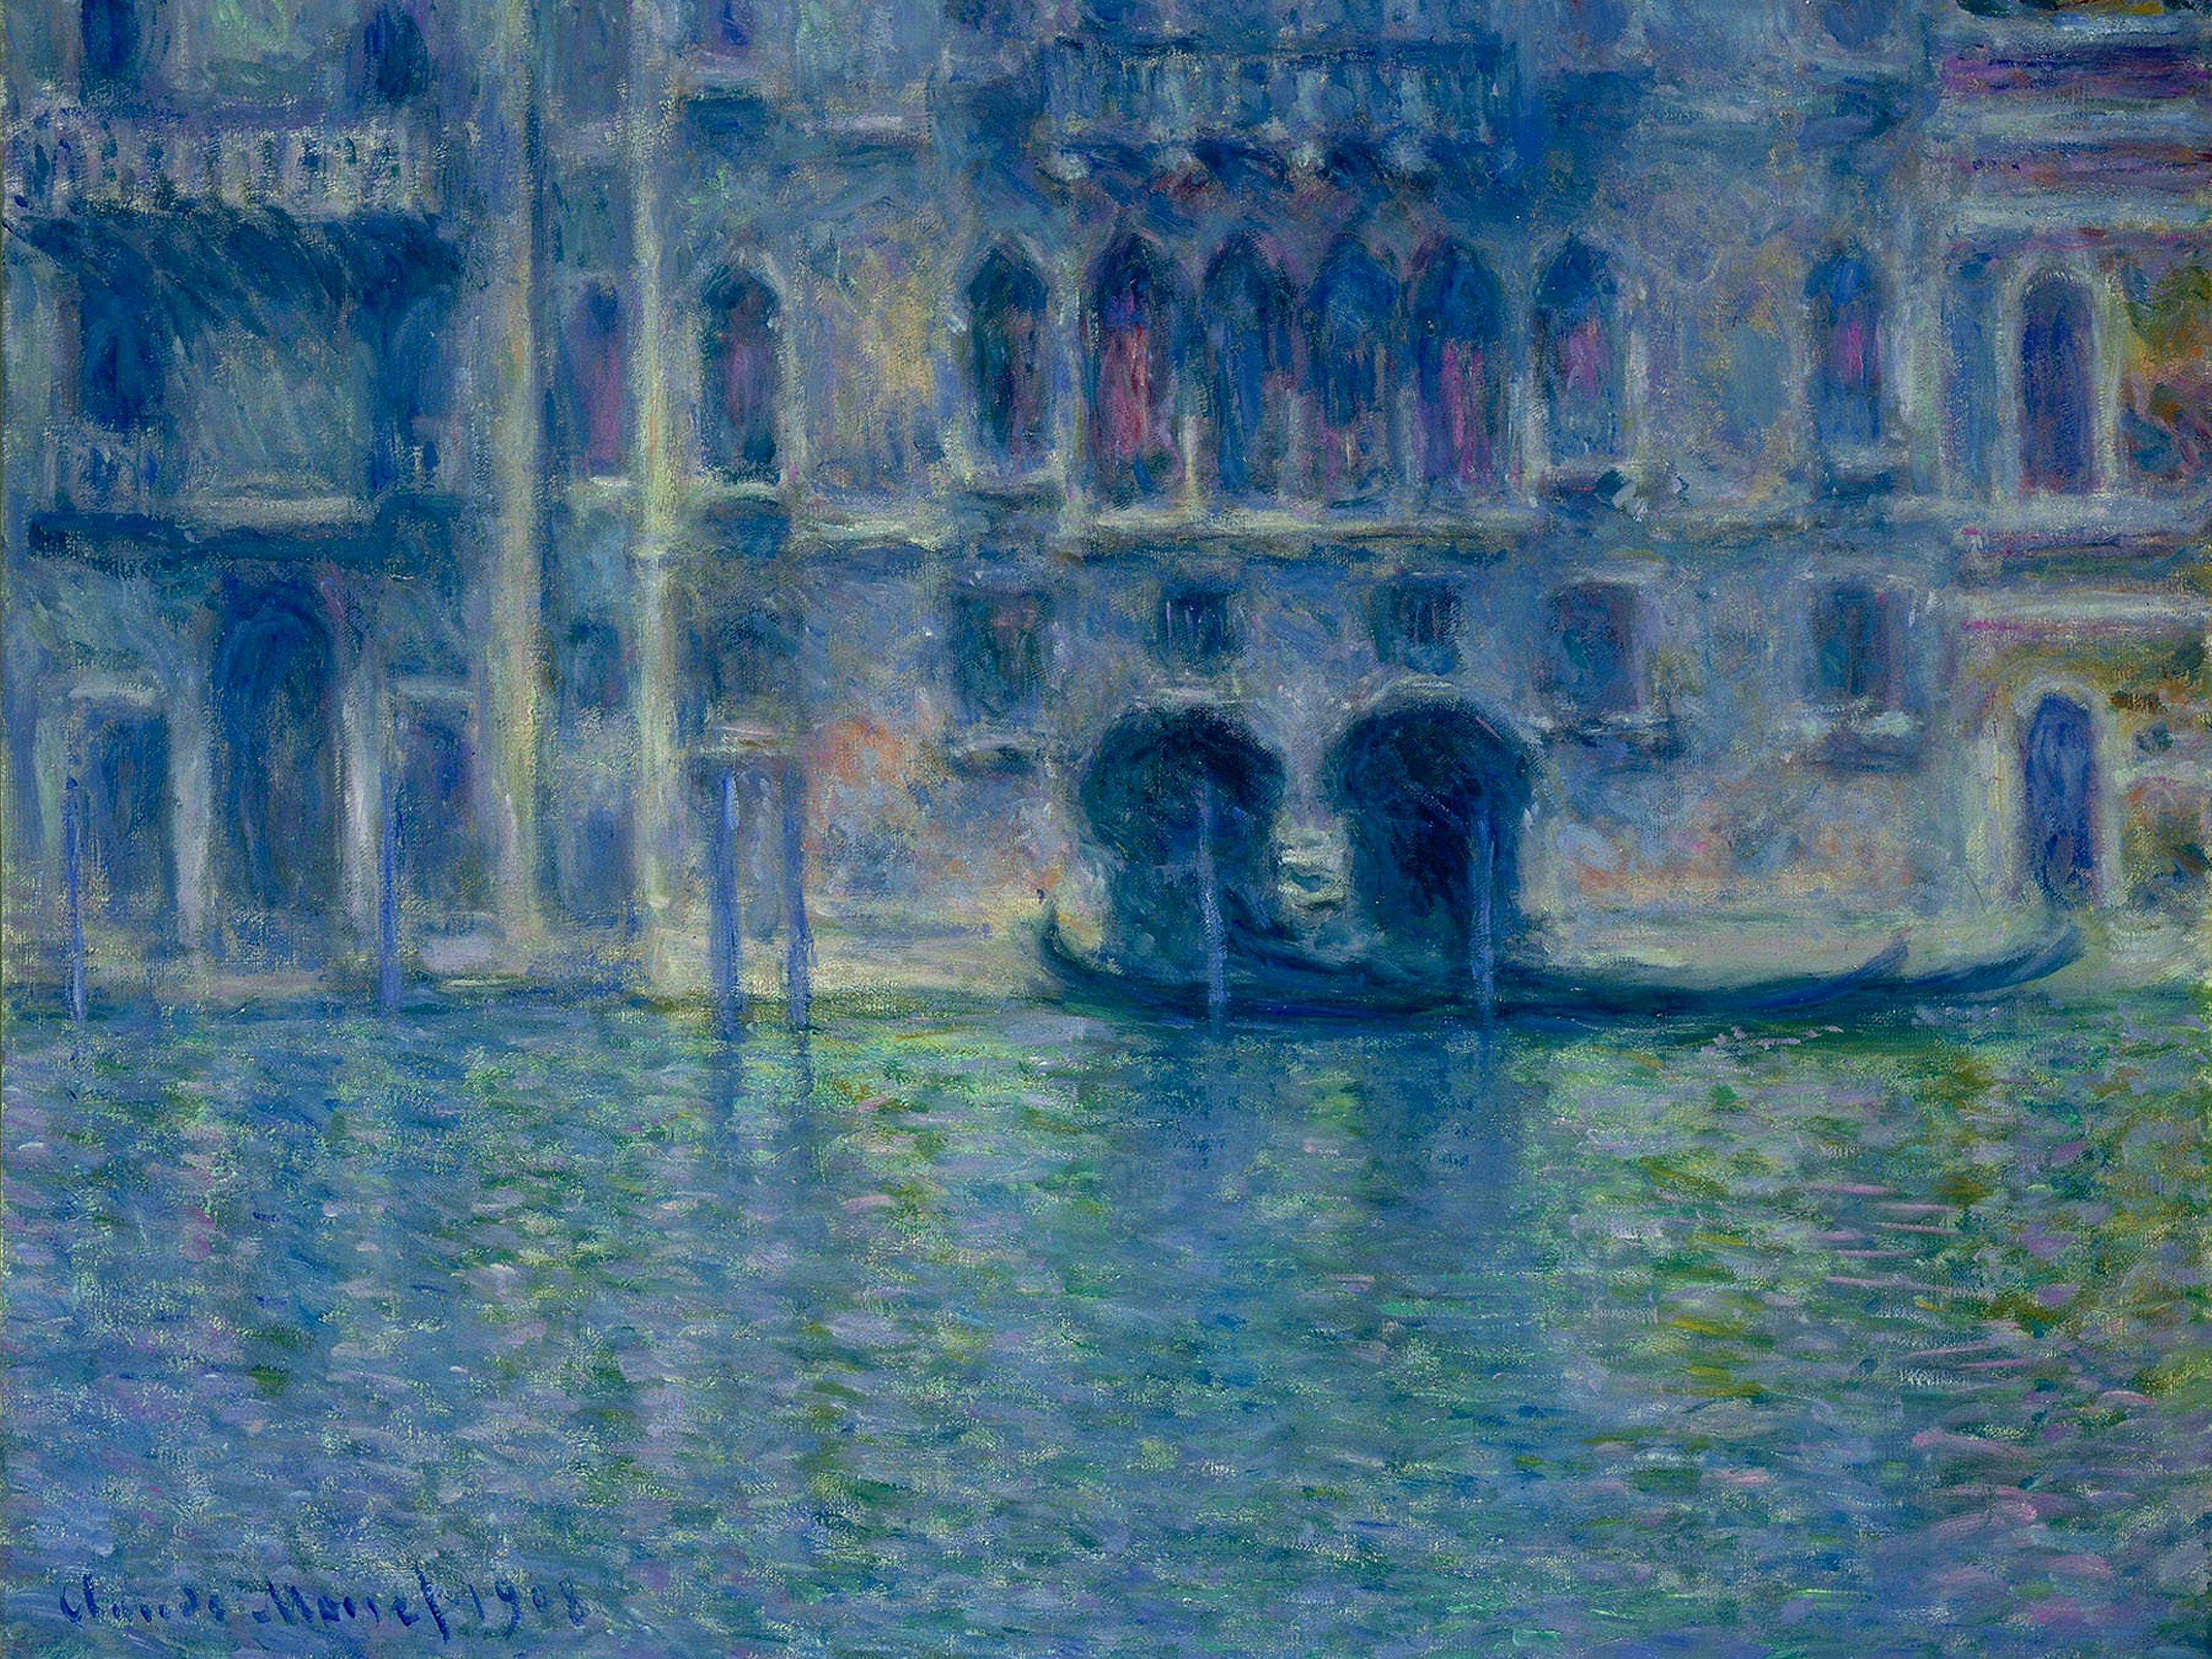 Palazzo da Mula, Veneția by Claude Monet - 1908 - 61.4 x 80.5 cm 